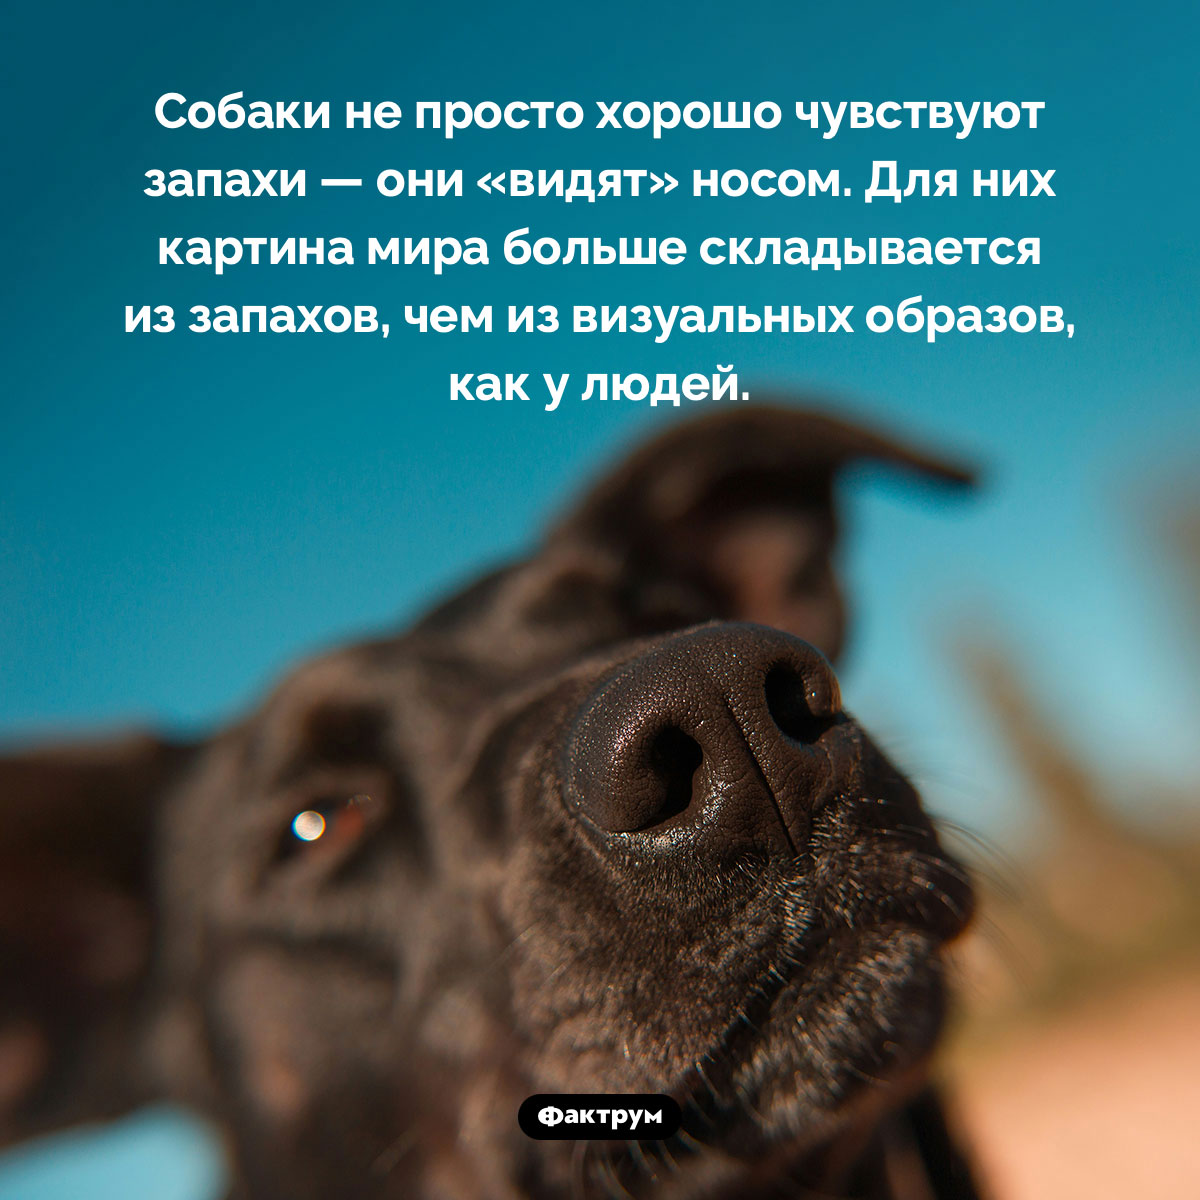 Собаки «видят» носом. Собаки не просто хорошо чувствуют запахи — они «видят» носом. Для них картина мира больше складывается из запахов, чем из визуальных образов, как у людей.